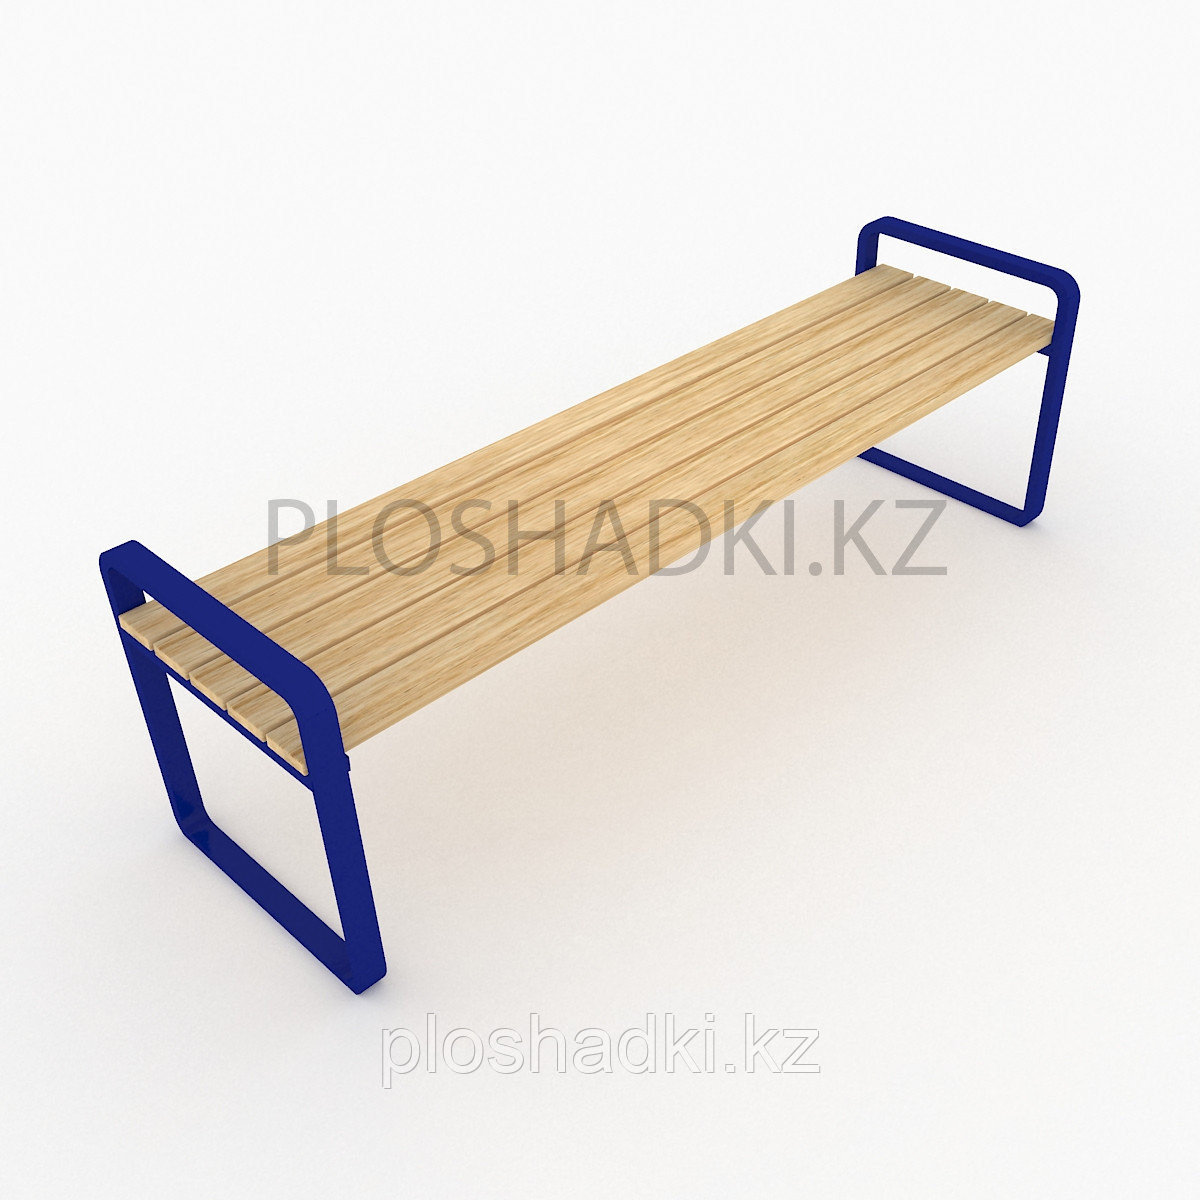 Скамейка деревянная, подлокотники и ножки в геометрическом стиле